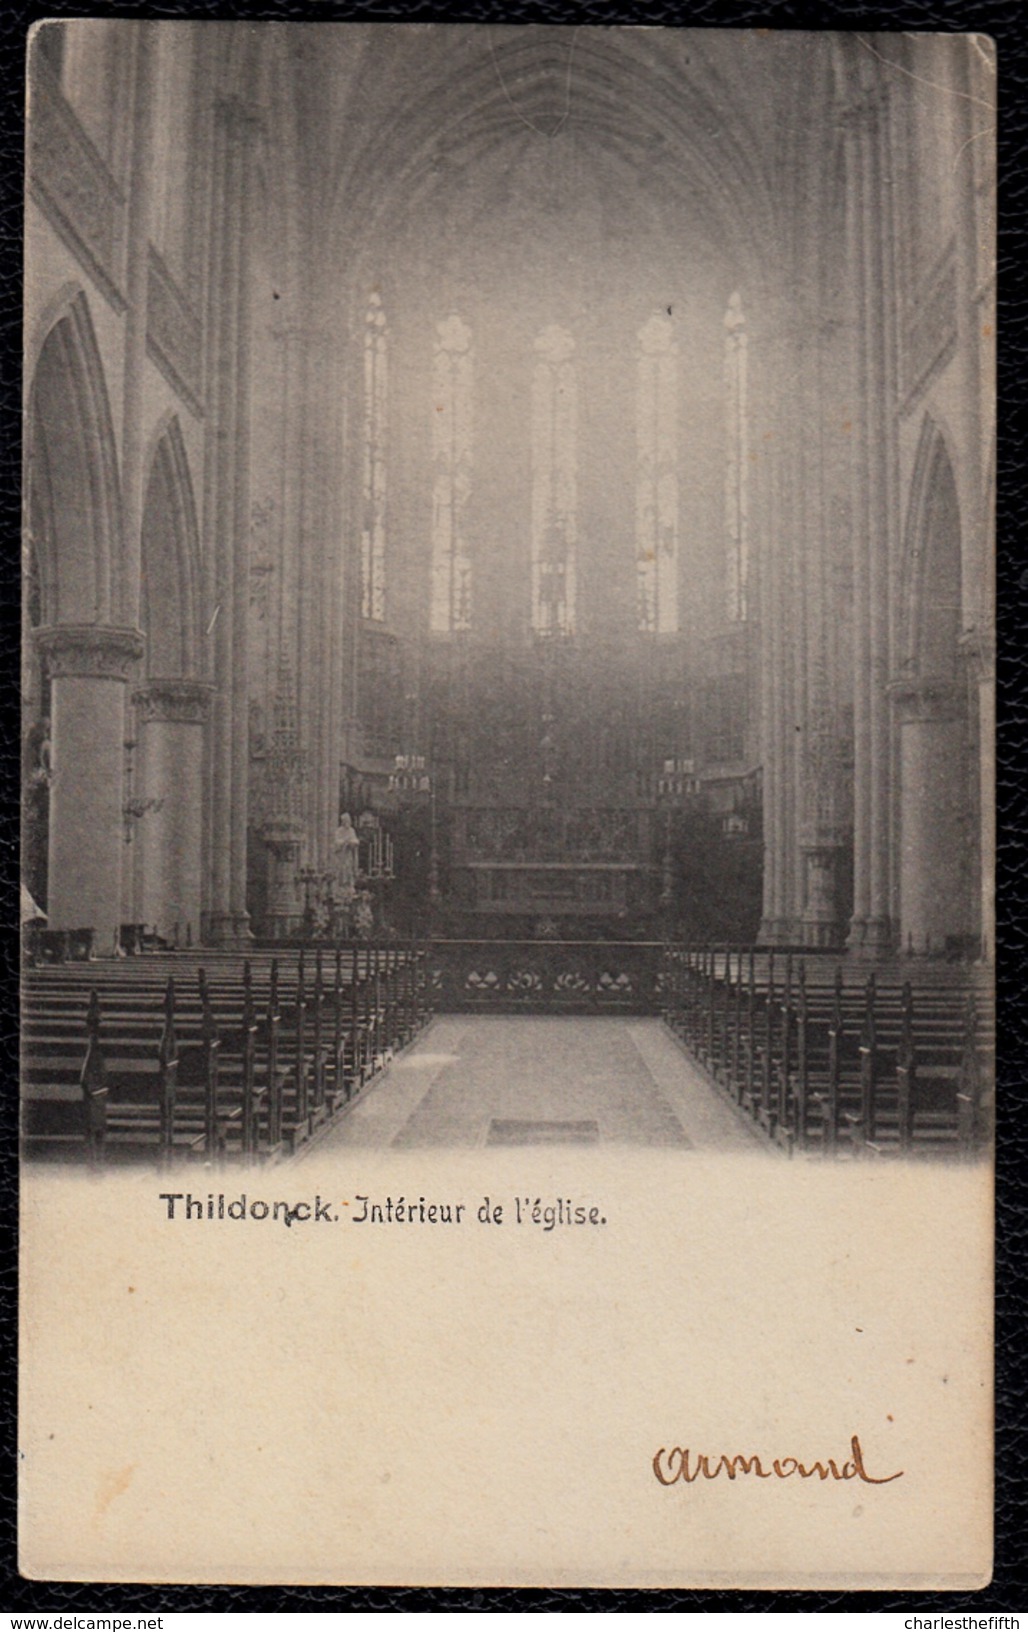 THILDONCK - INTERIEUR DE L'EGLISE - 1908 - Niet Courant - Haacht